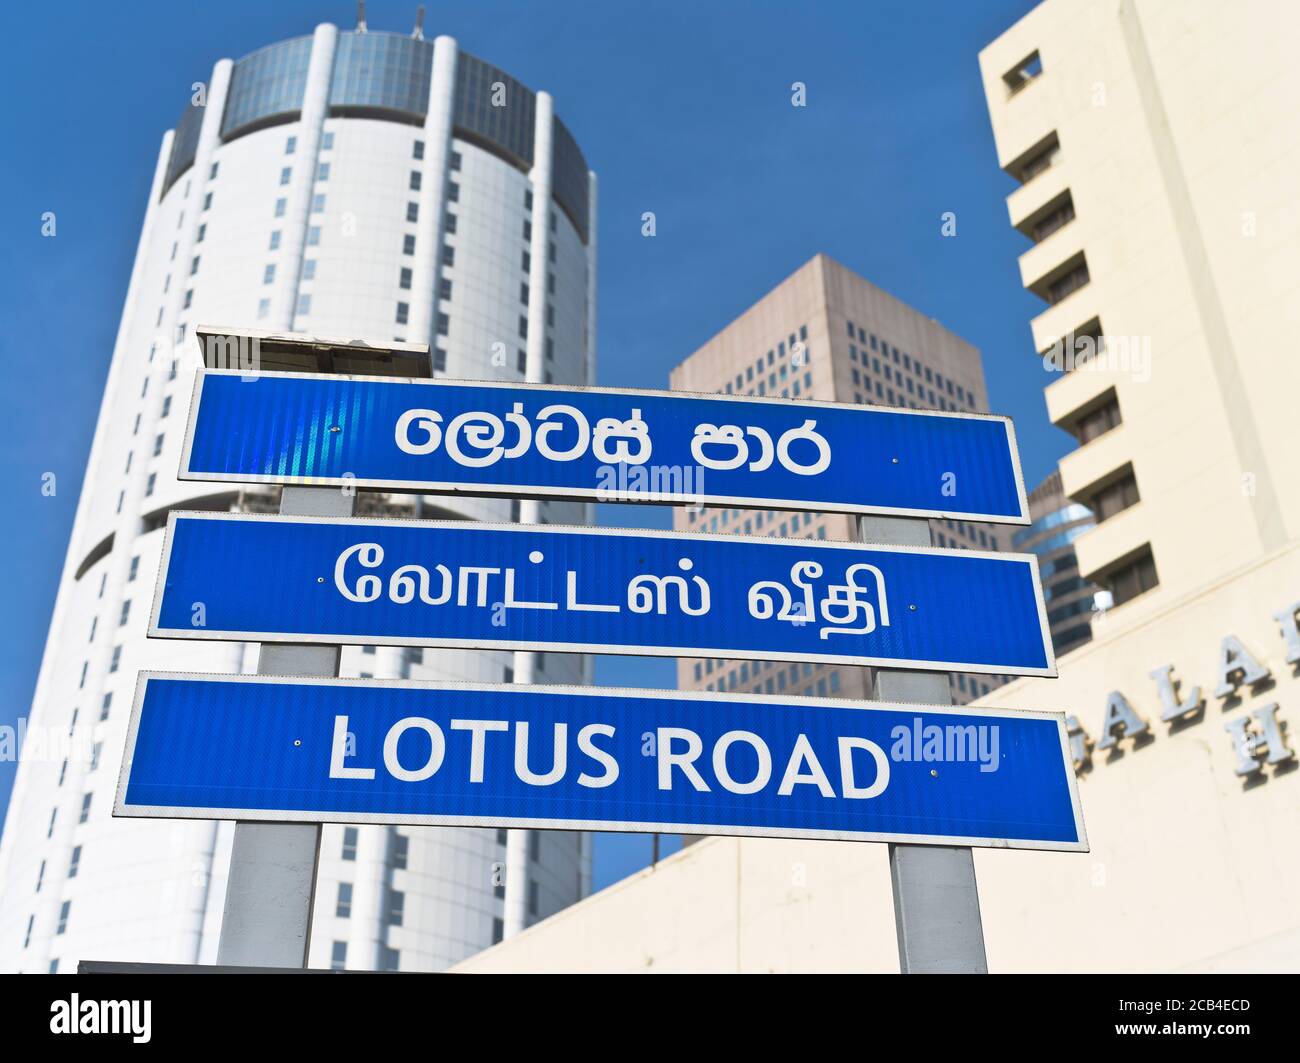 dh Lotus Road panneau de rue COLOMBO VILLE SRI LANKA multilingue Trilingue signe trois langues cingalais tamoul langue anglaise Banque D'Images